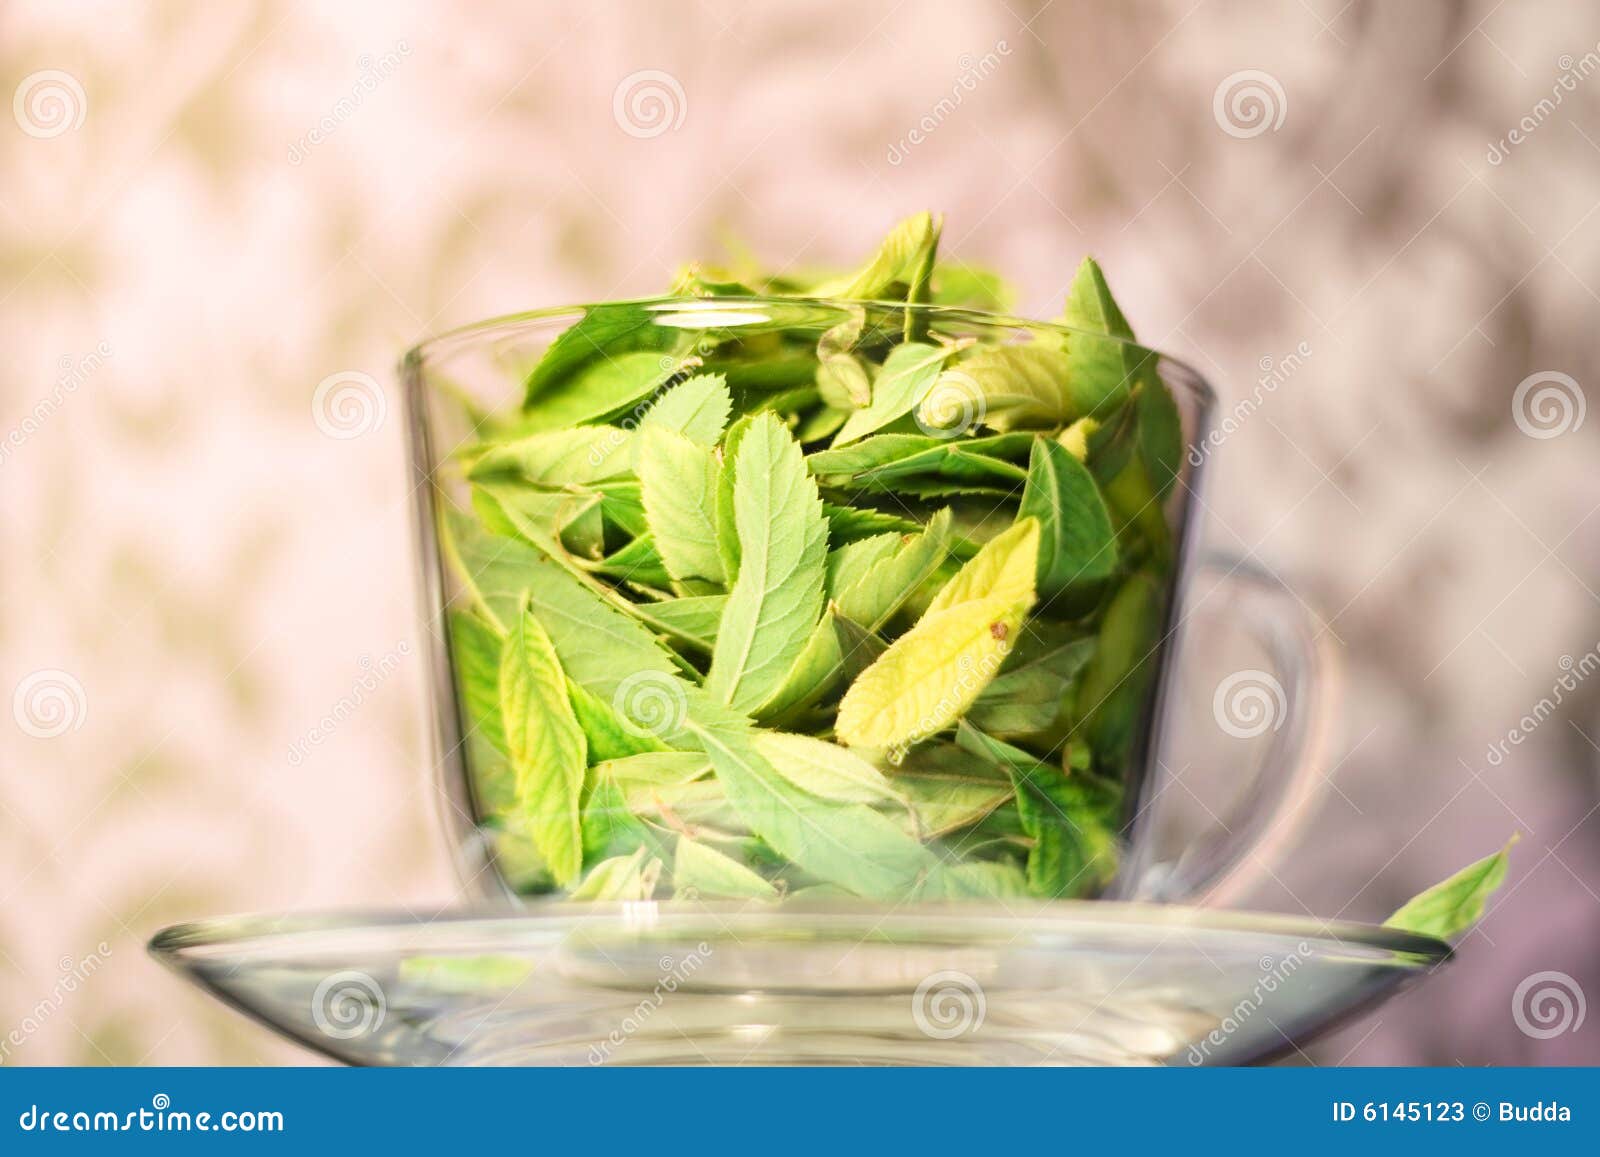 green tea freshness